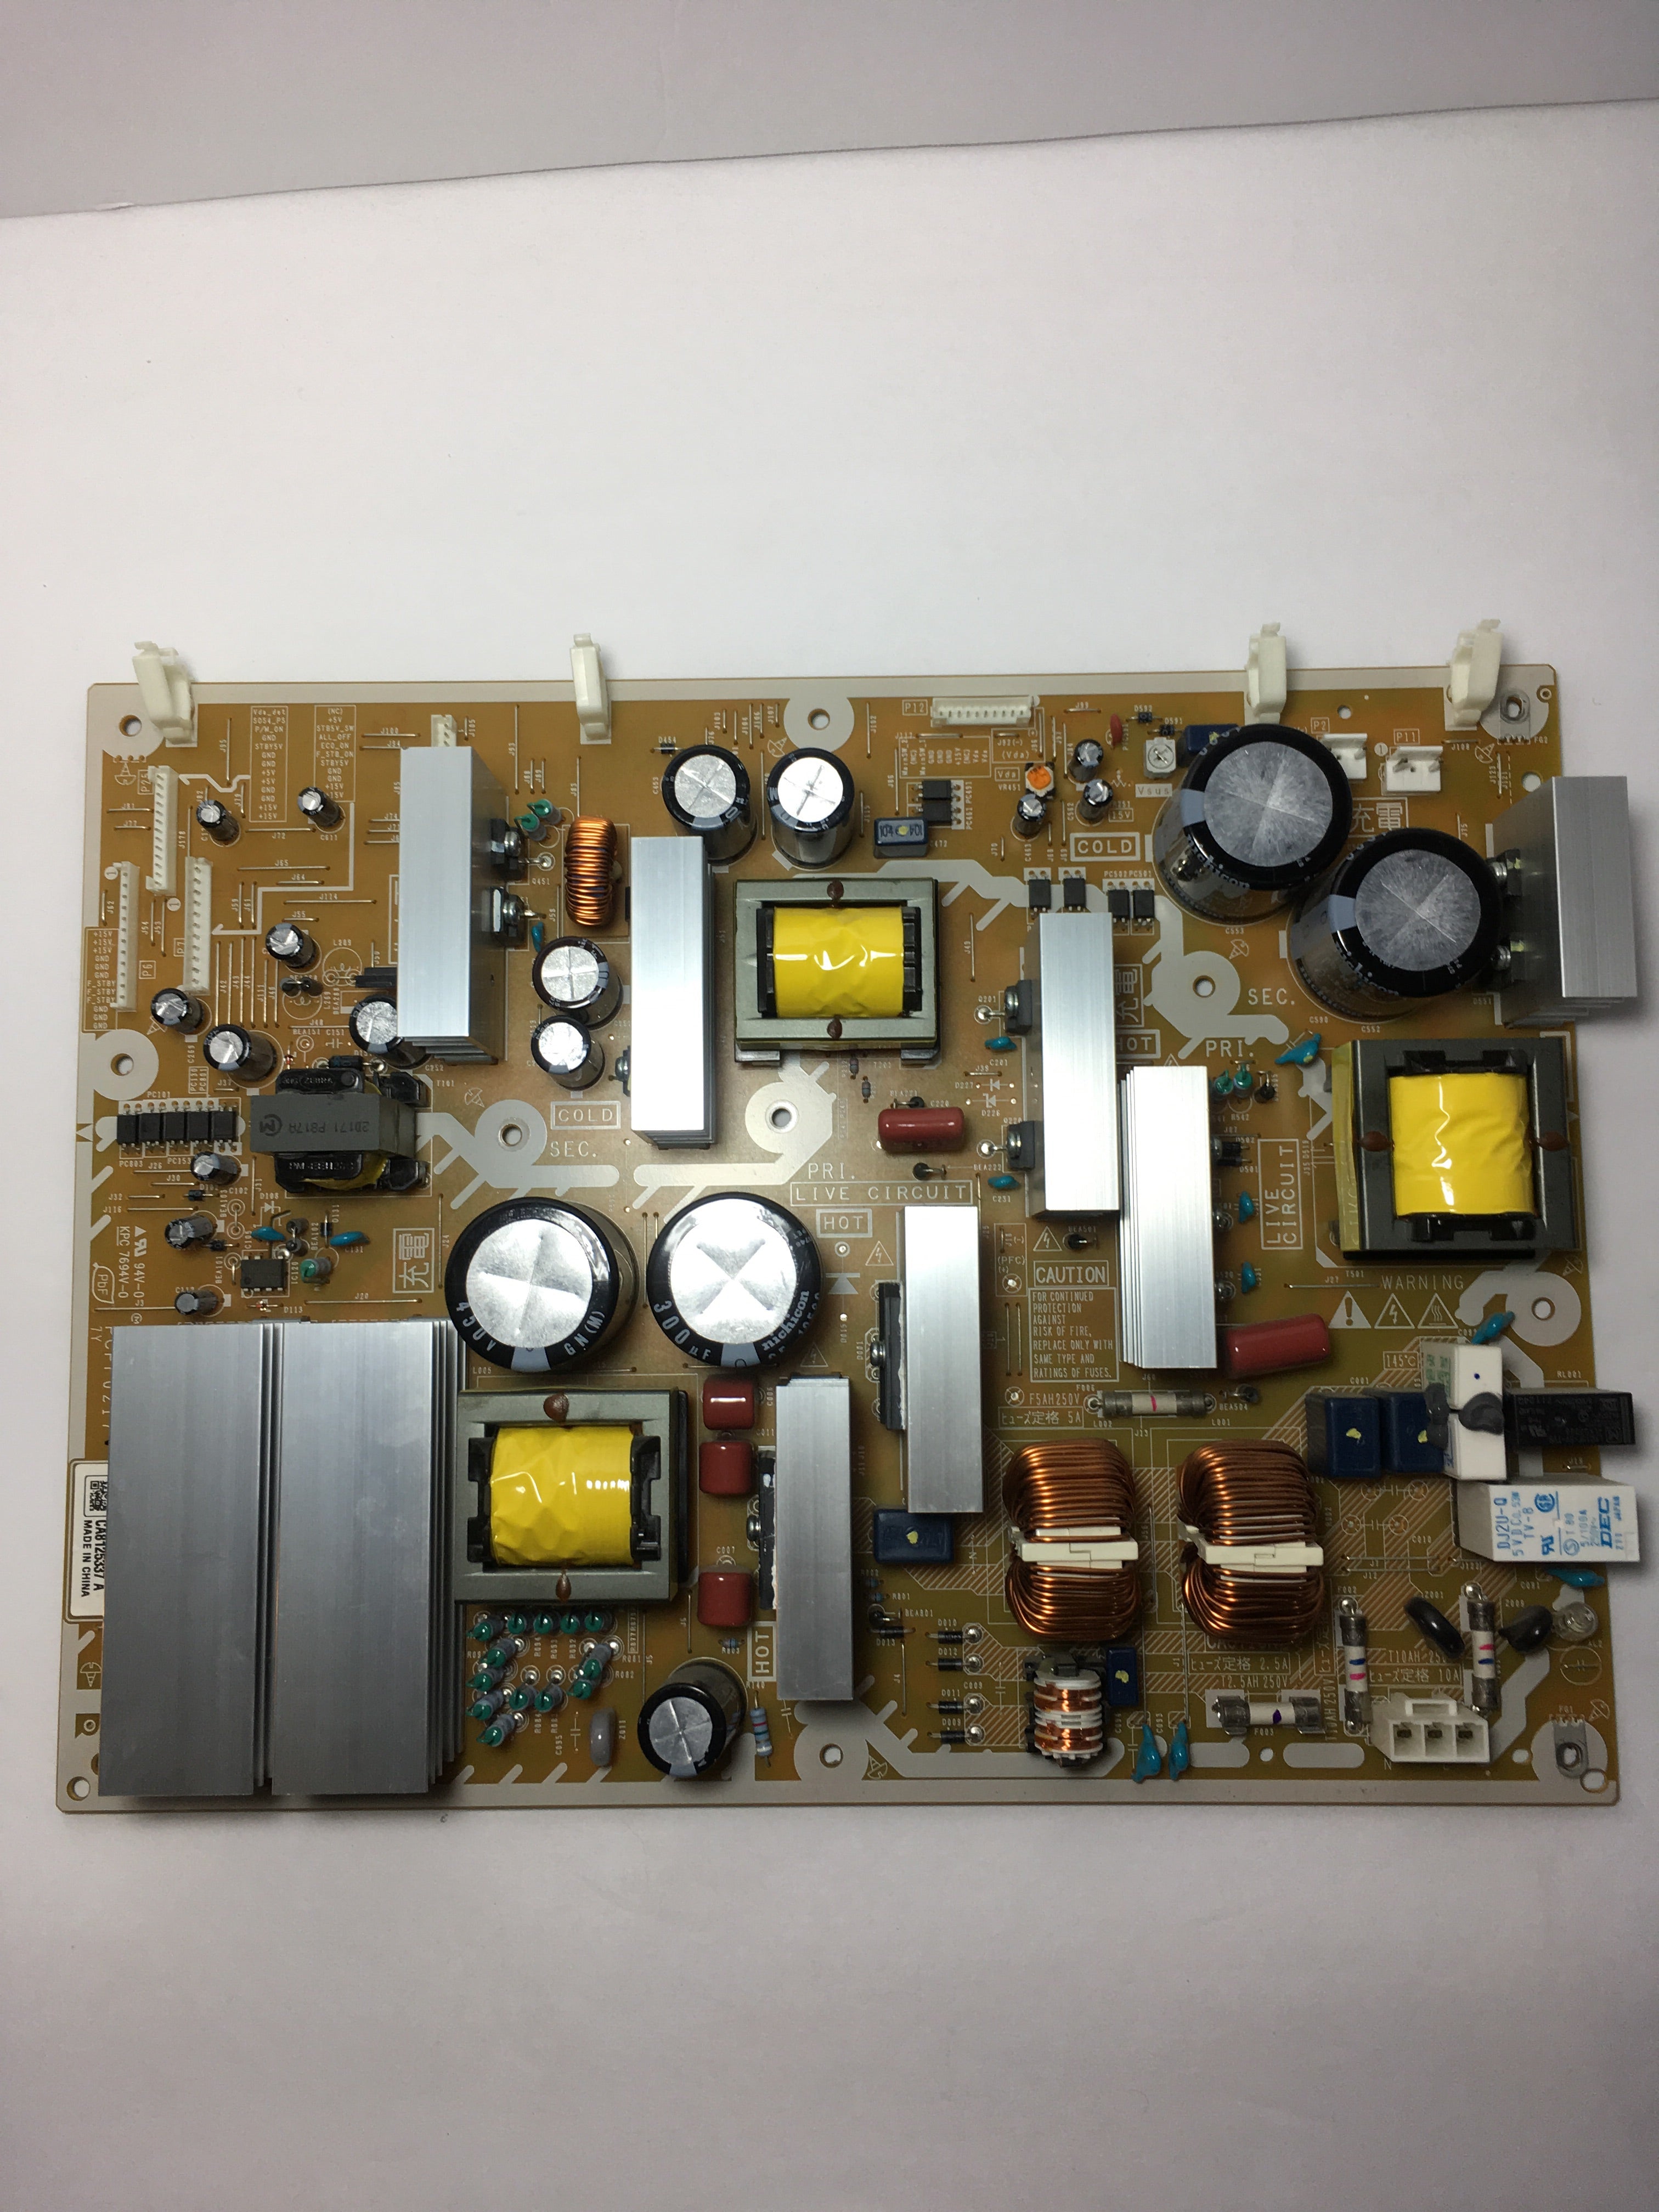 Panasonic N0AE6JL00001 (MPF7719, PCPF0217) Power Supply